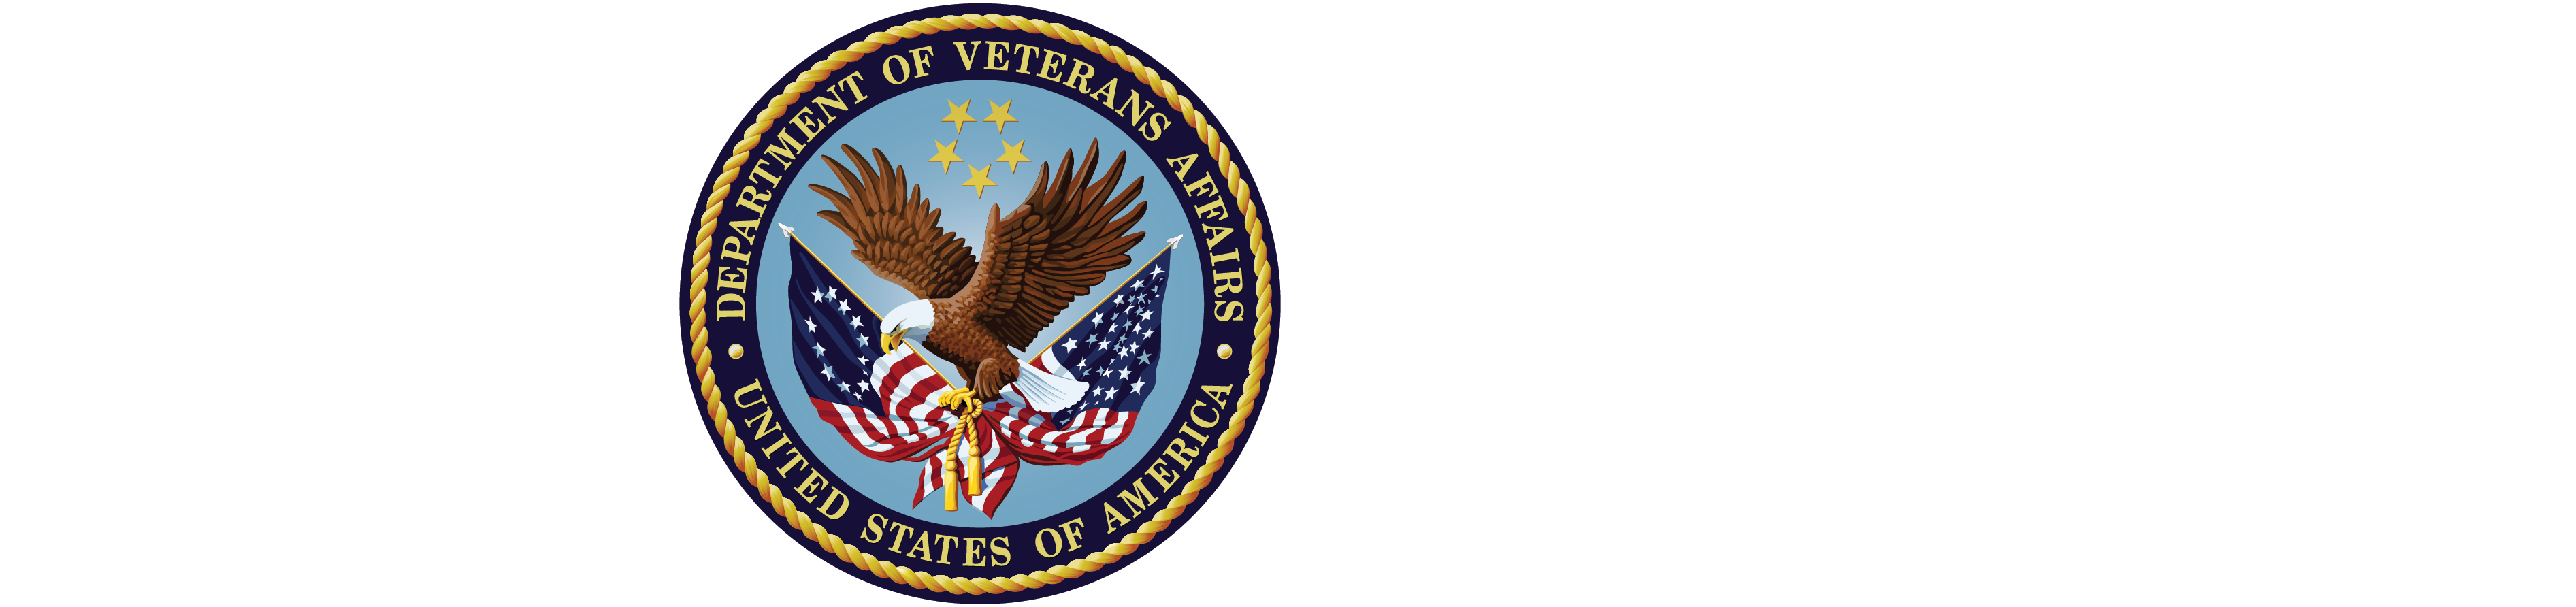 VA logo with text